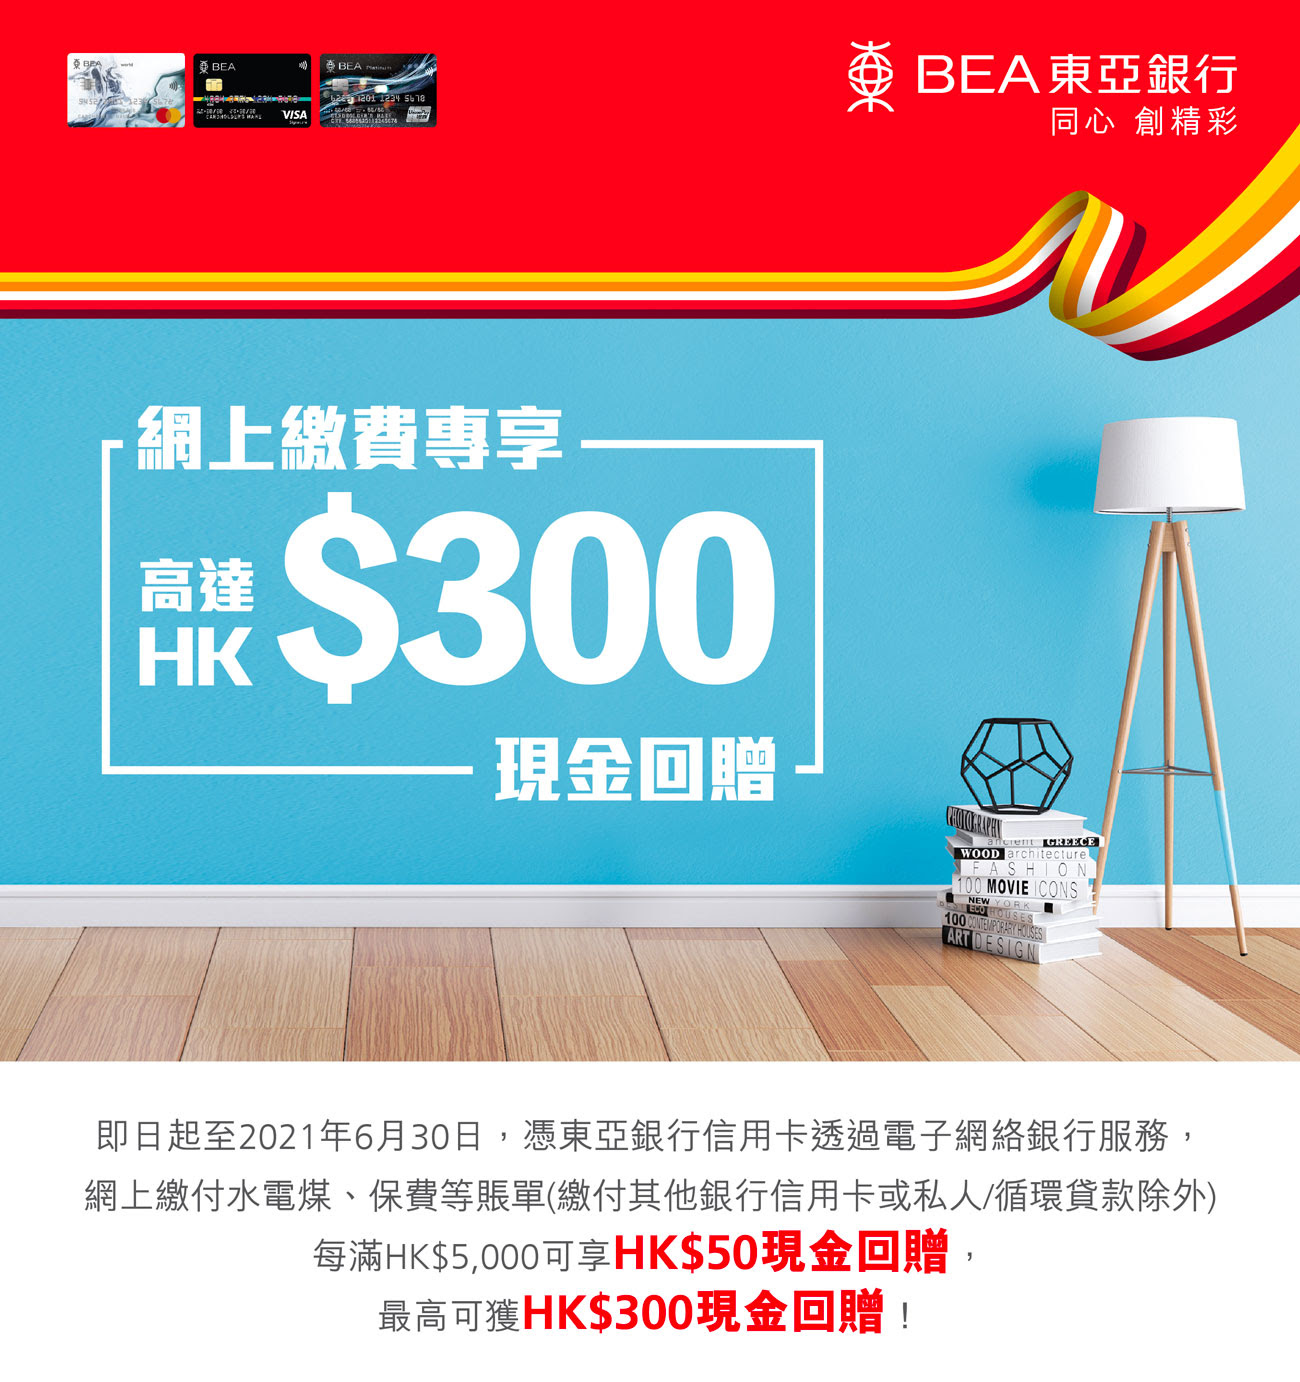 【東亞銀行信用卡優惠】網上繳費，包括水電煤、保費等賬單每滿$5,000有$50現金回贈！最多有HK$300現金回贈！